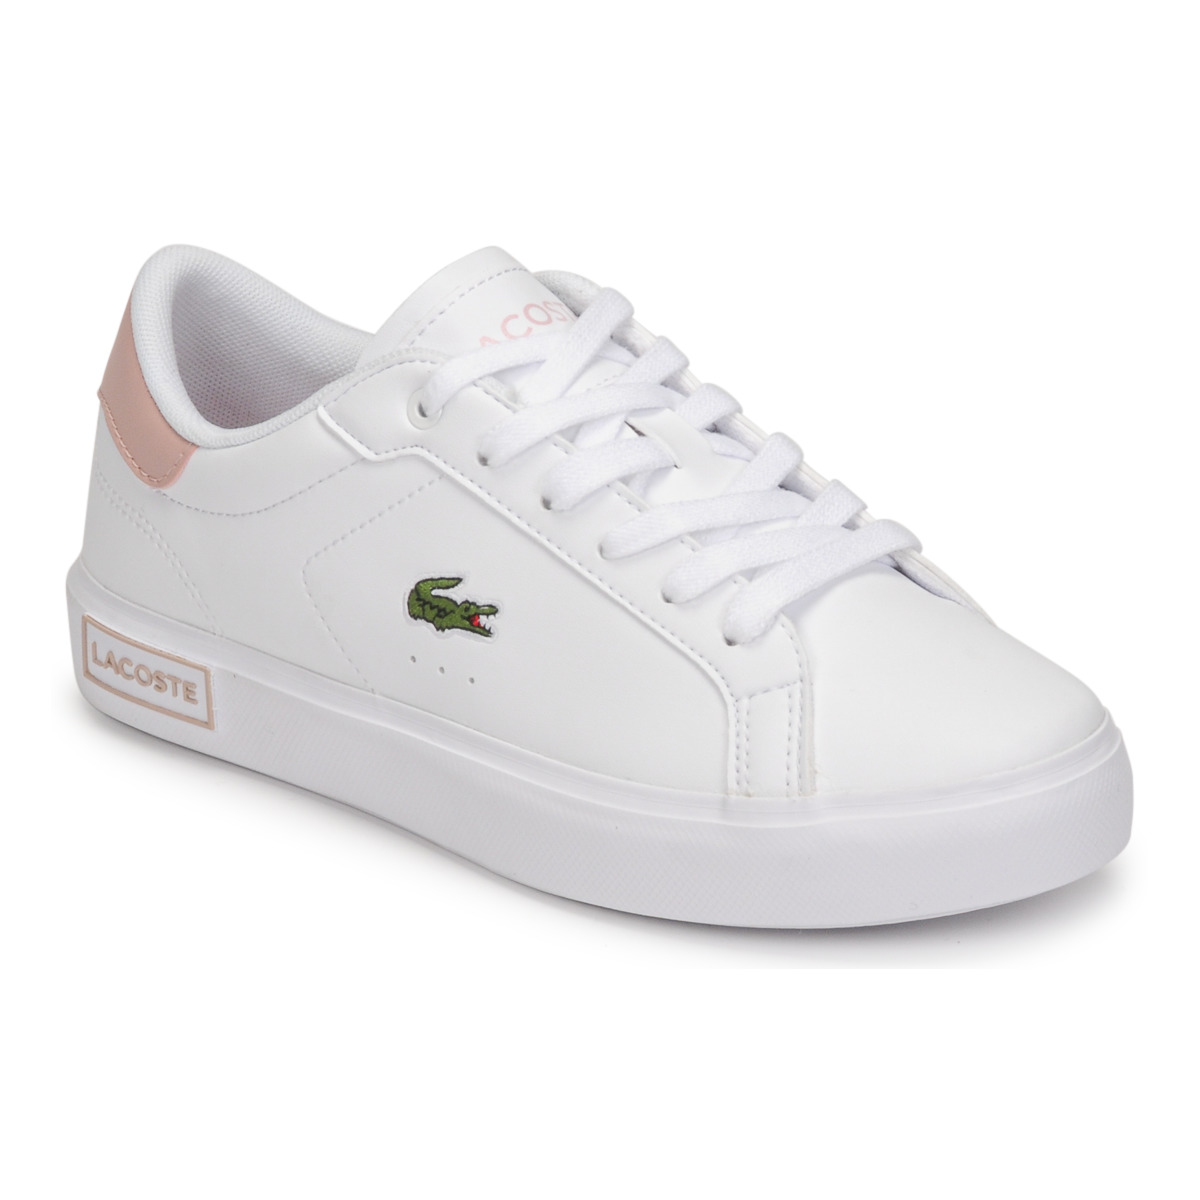 Παπούτσια Κορίτσι Χαμηλά Sneakers Lacoste POWERCOURT Άσπρο / Ροζ